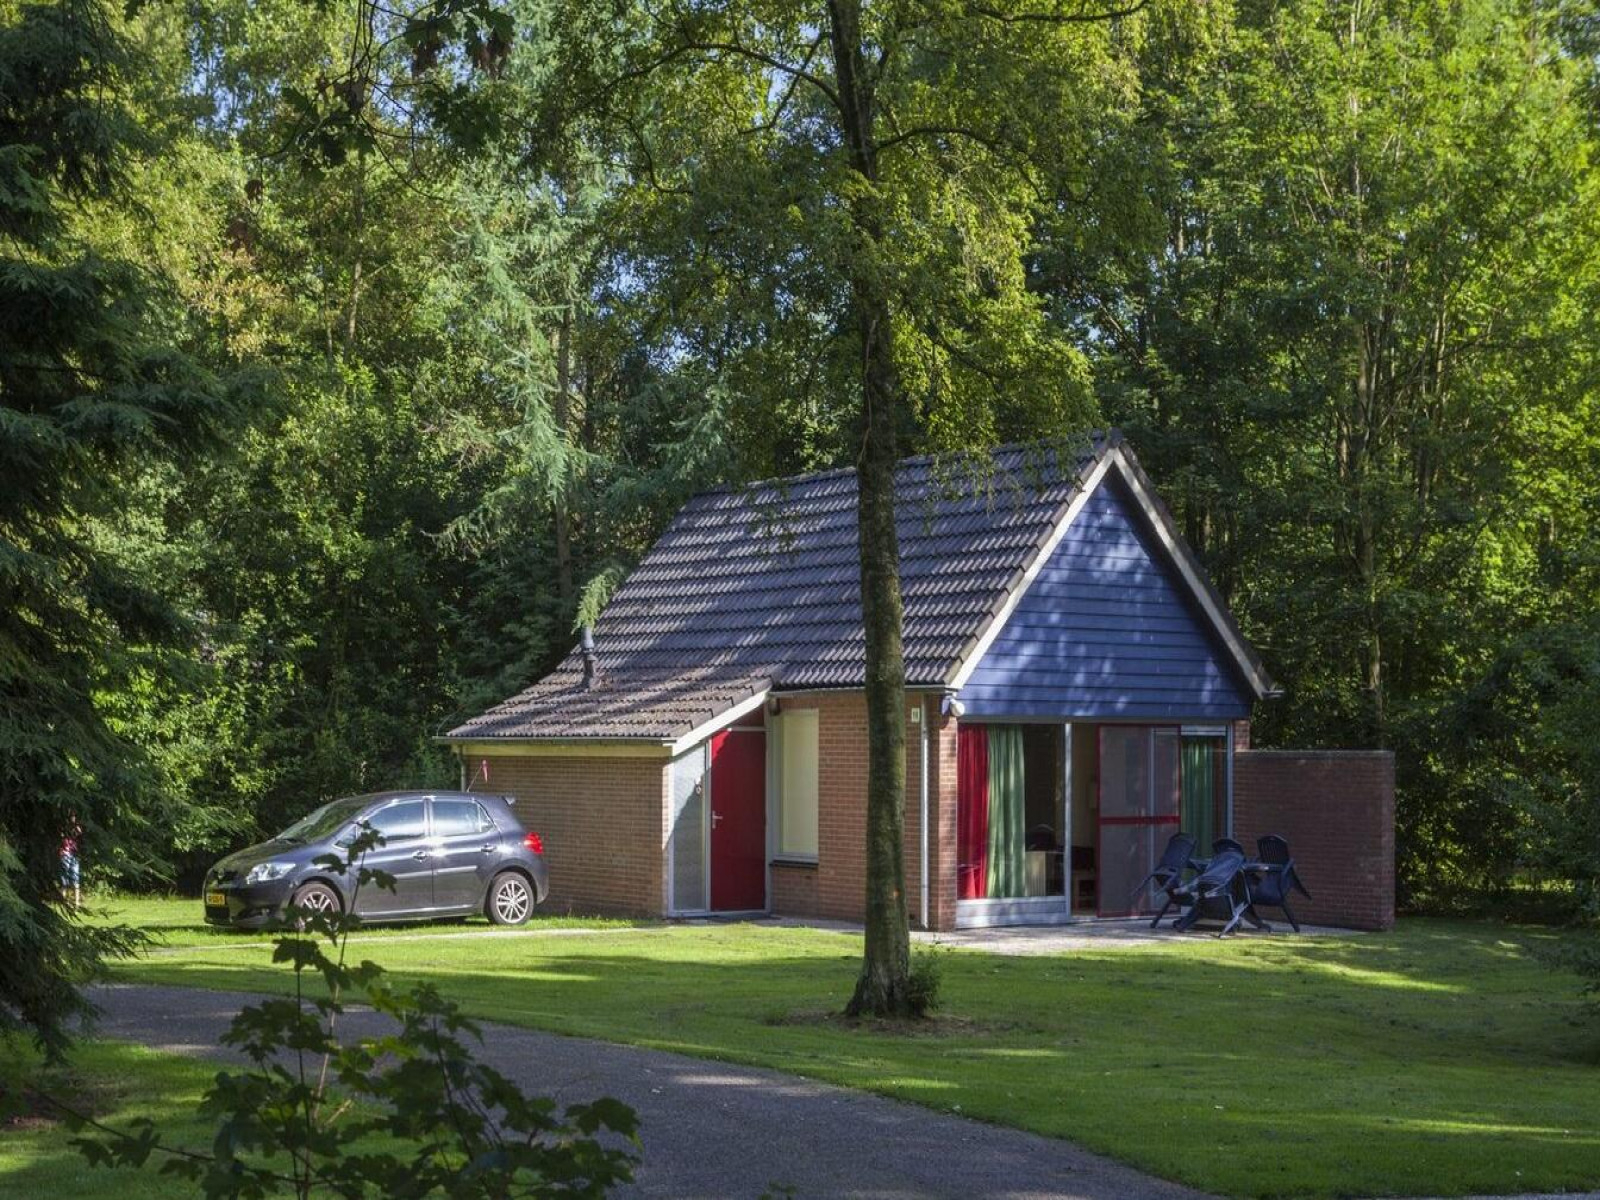 Mooi 4 persoons vakantiehuis op de Sallandshoeve in Salland - Nederland - Europa - Nieuw Heeten